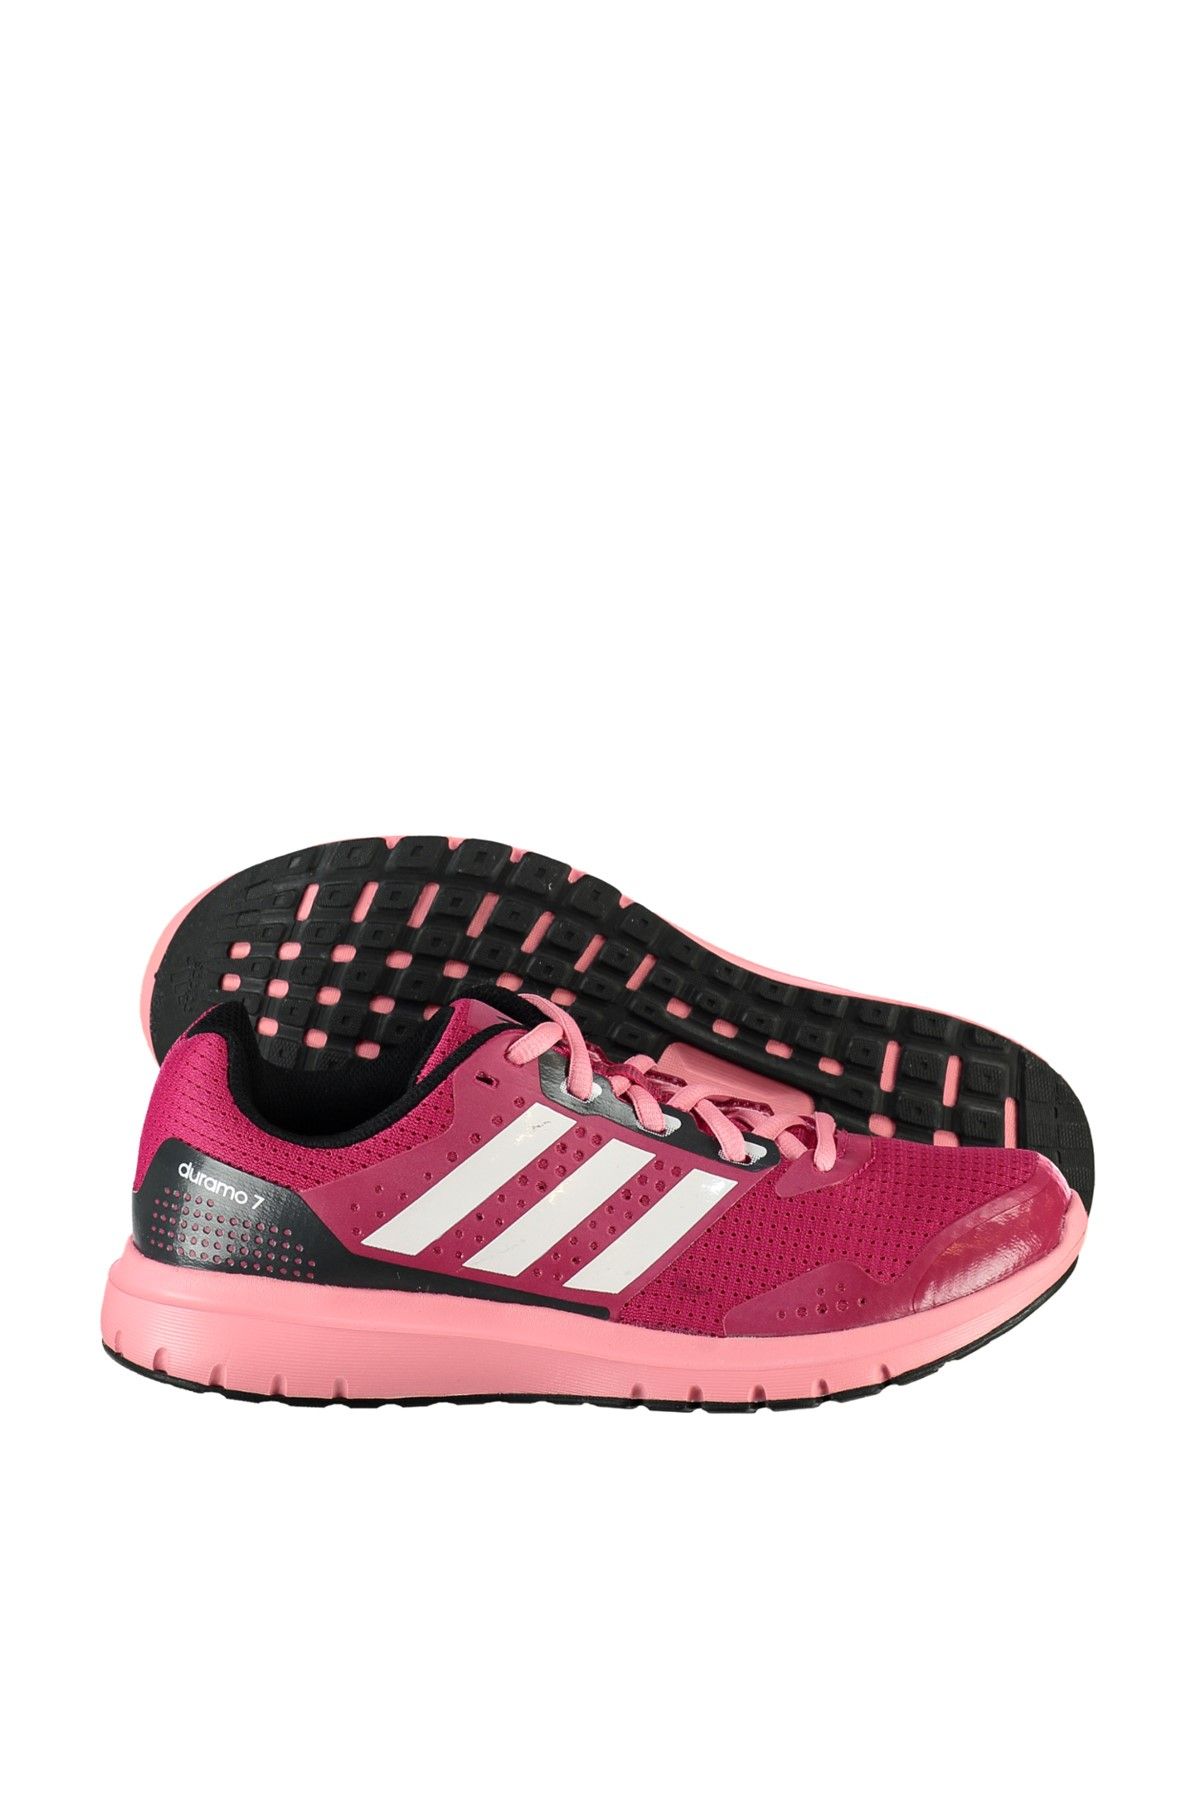 adidas Kadın Koşu Ayakkabı - Duramo 7 W